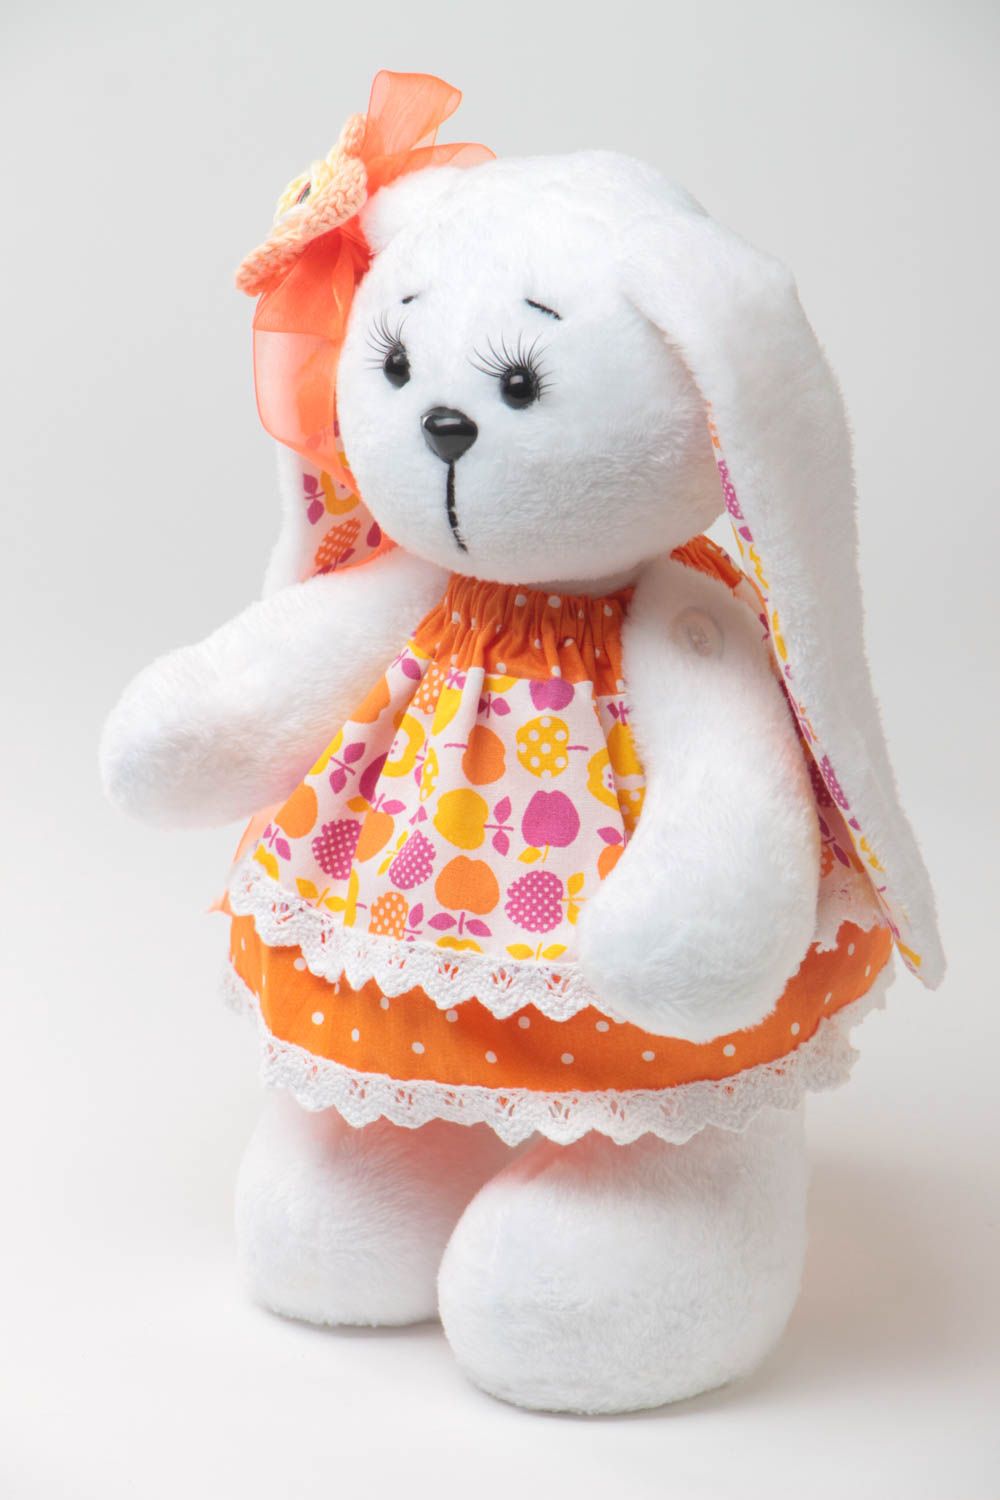 Детская мягкая игрушка ручной работы зайка в платье из ткани для девочке фото 2